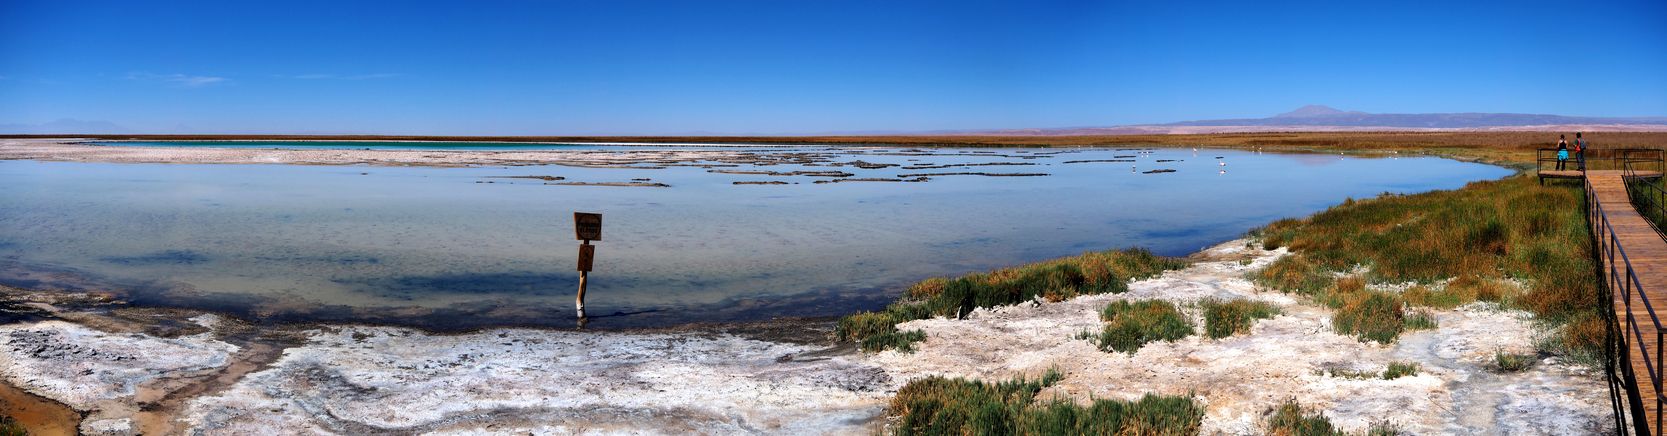 Laguna Cejar - désert d'Atacama